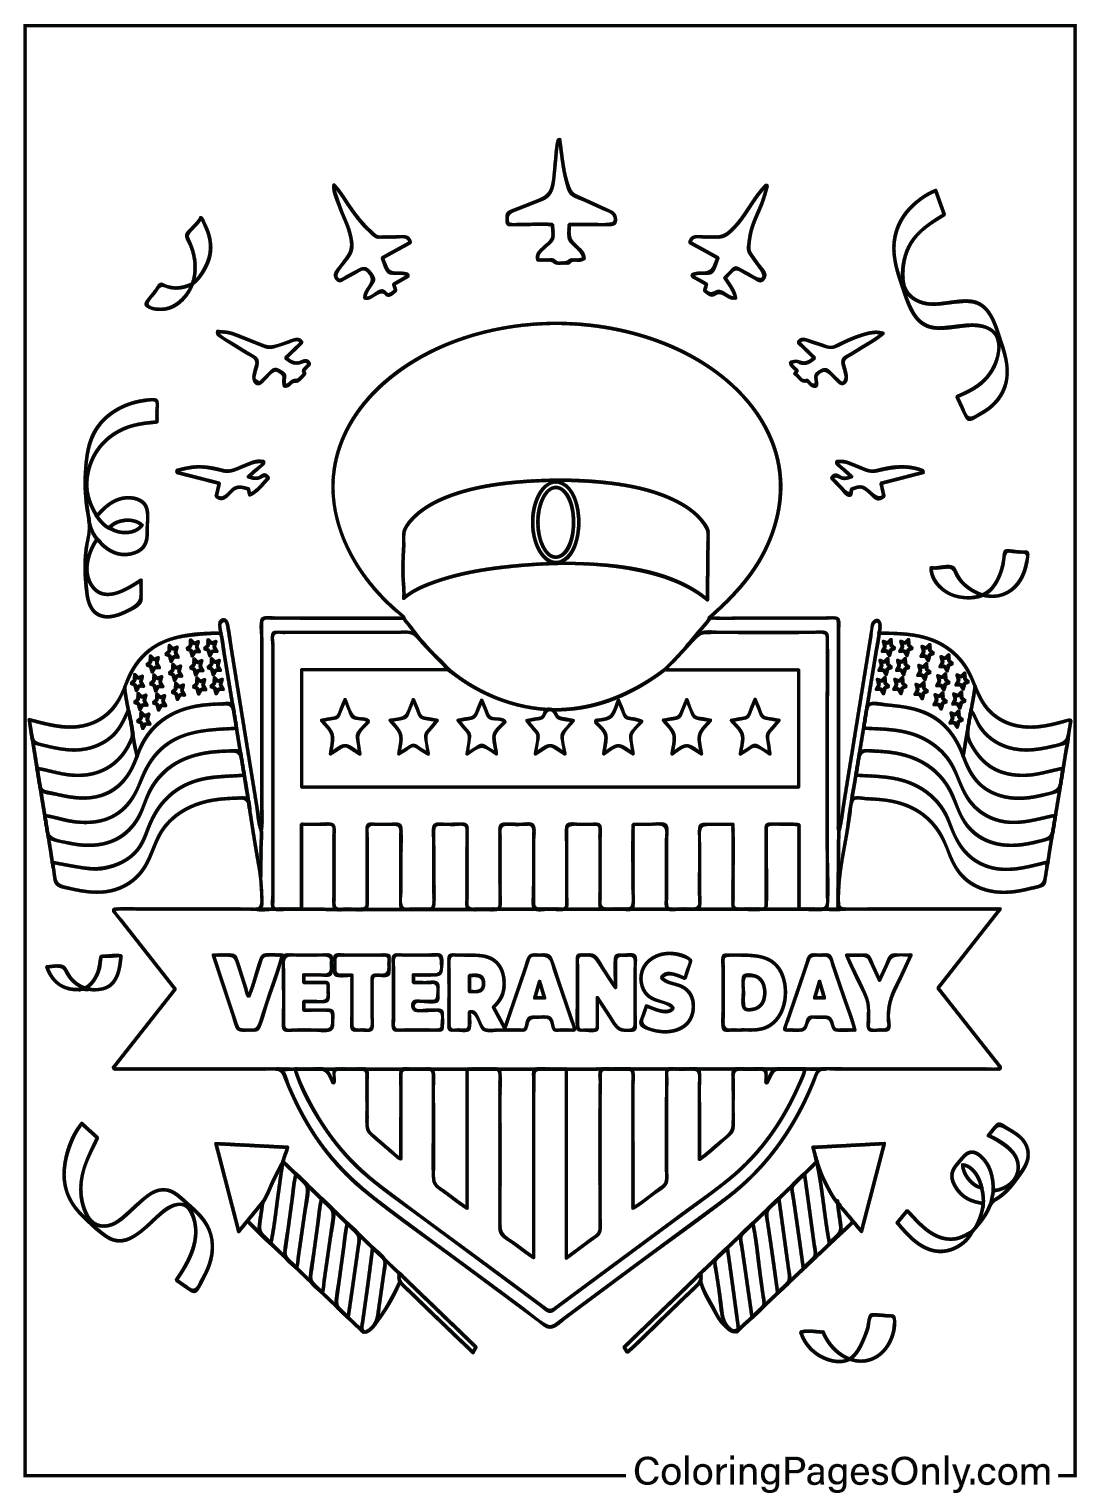 Colorazione del Giorno dei Veterani da Giorno dei Veterani